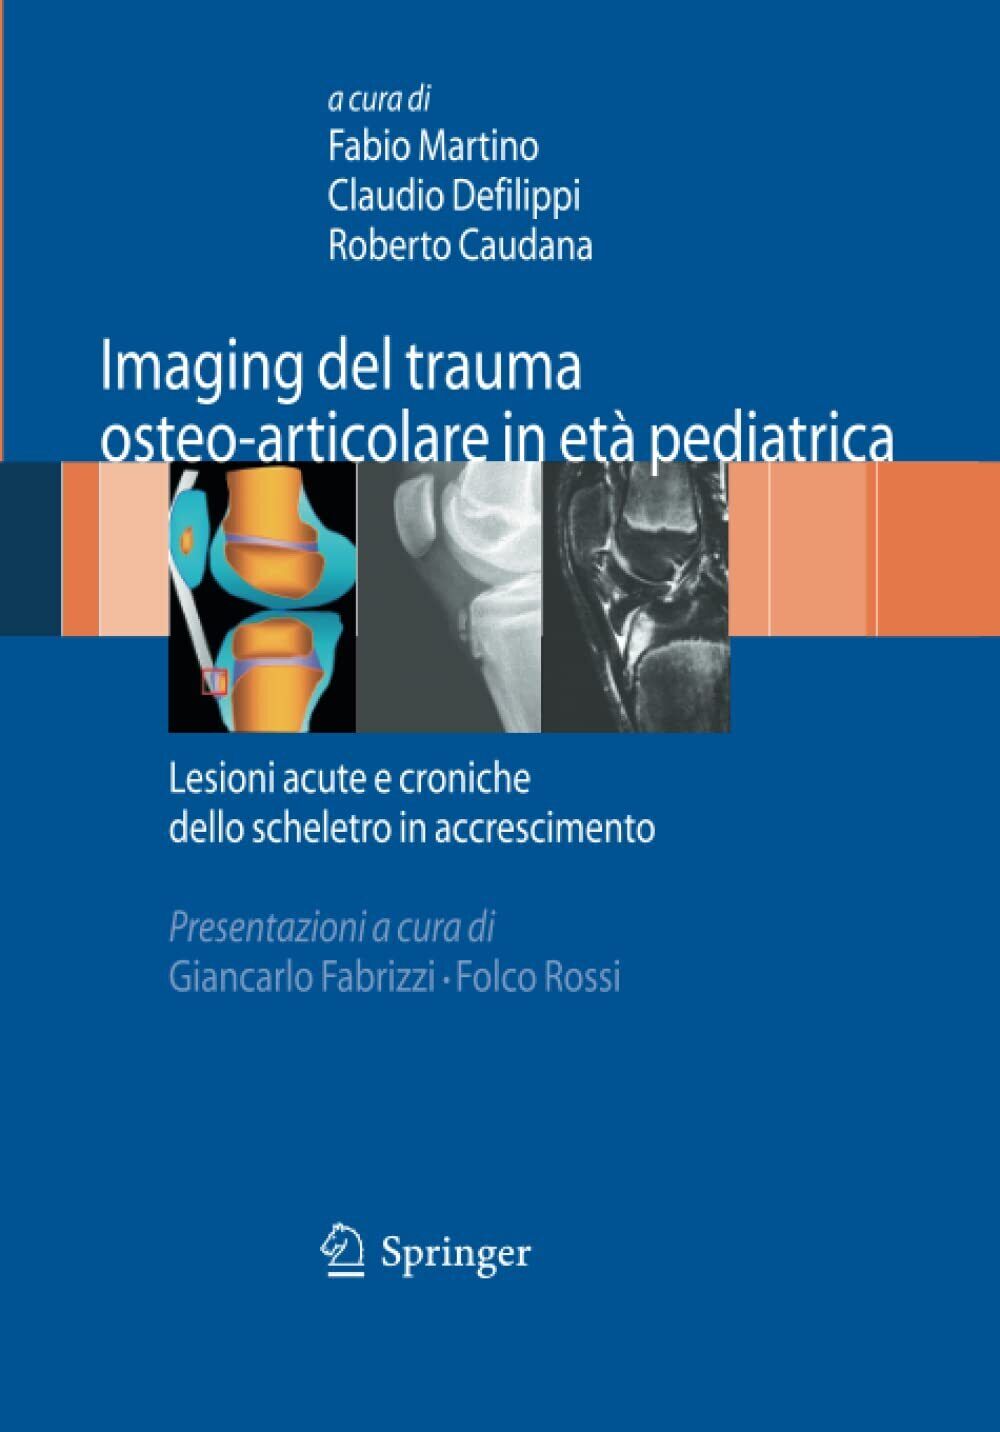 Imaging del trauma osteo-articolare in et? pediatrica - Fabio Martino - 2014